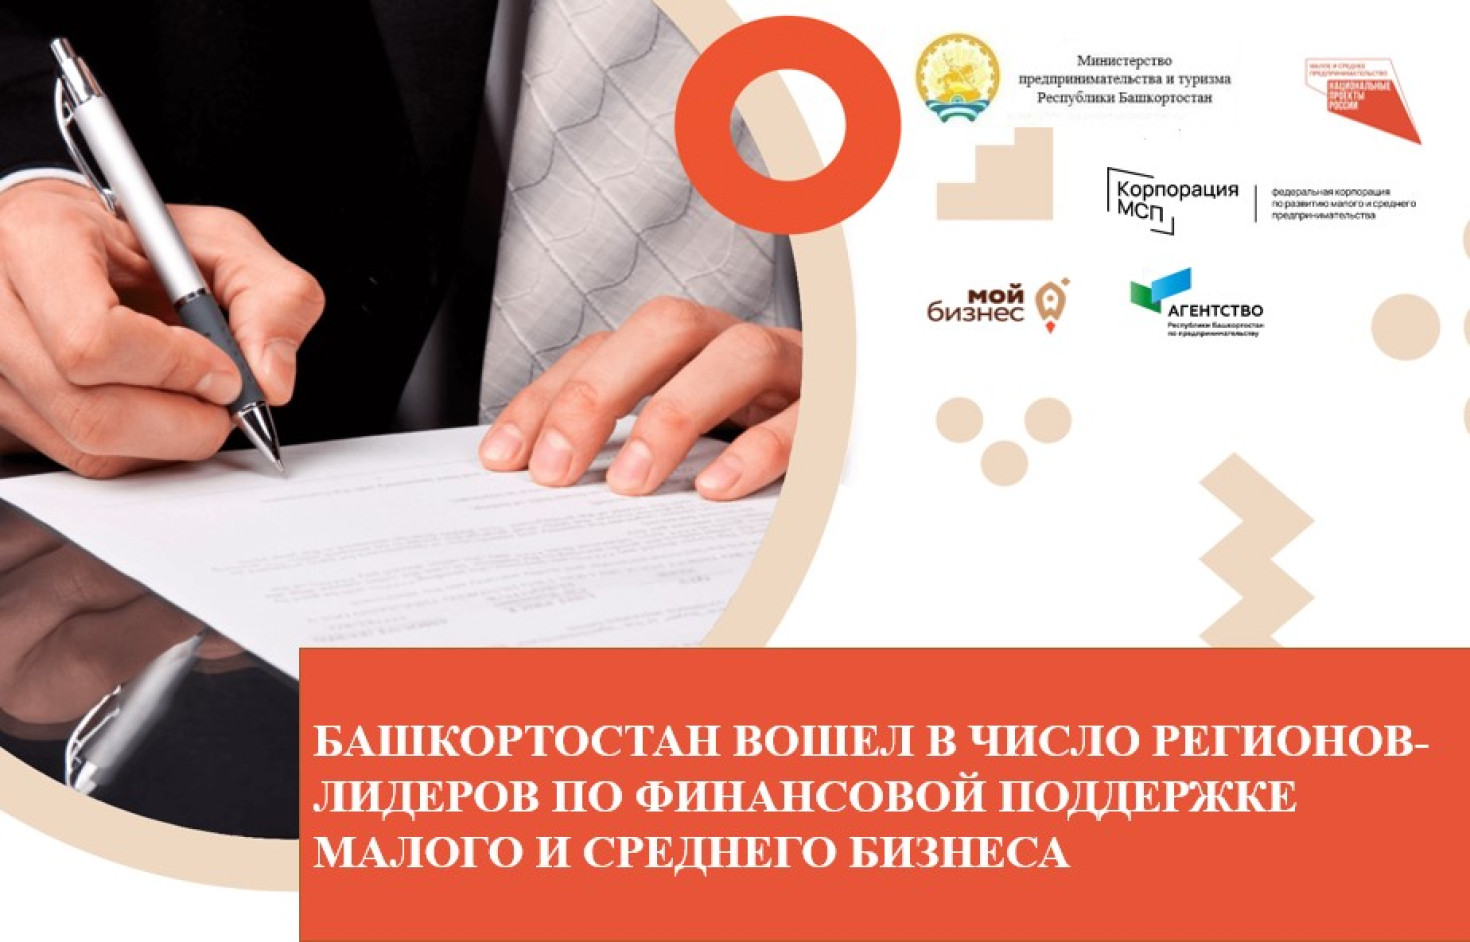 Башкортостан вошёл в число регионов-лидеров по финансовой поддержке малого и среднего бизнеса